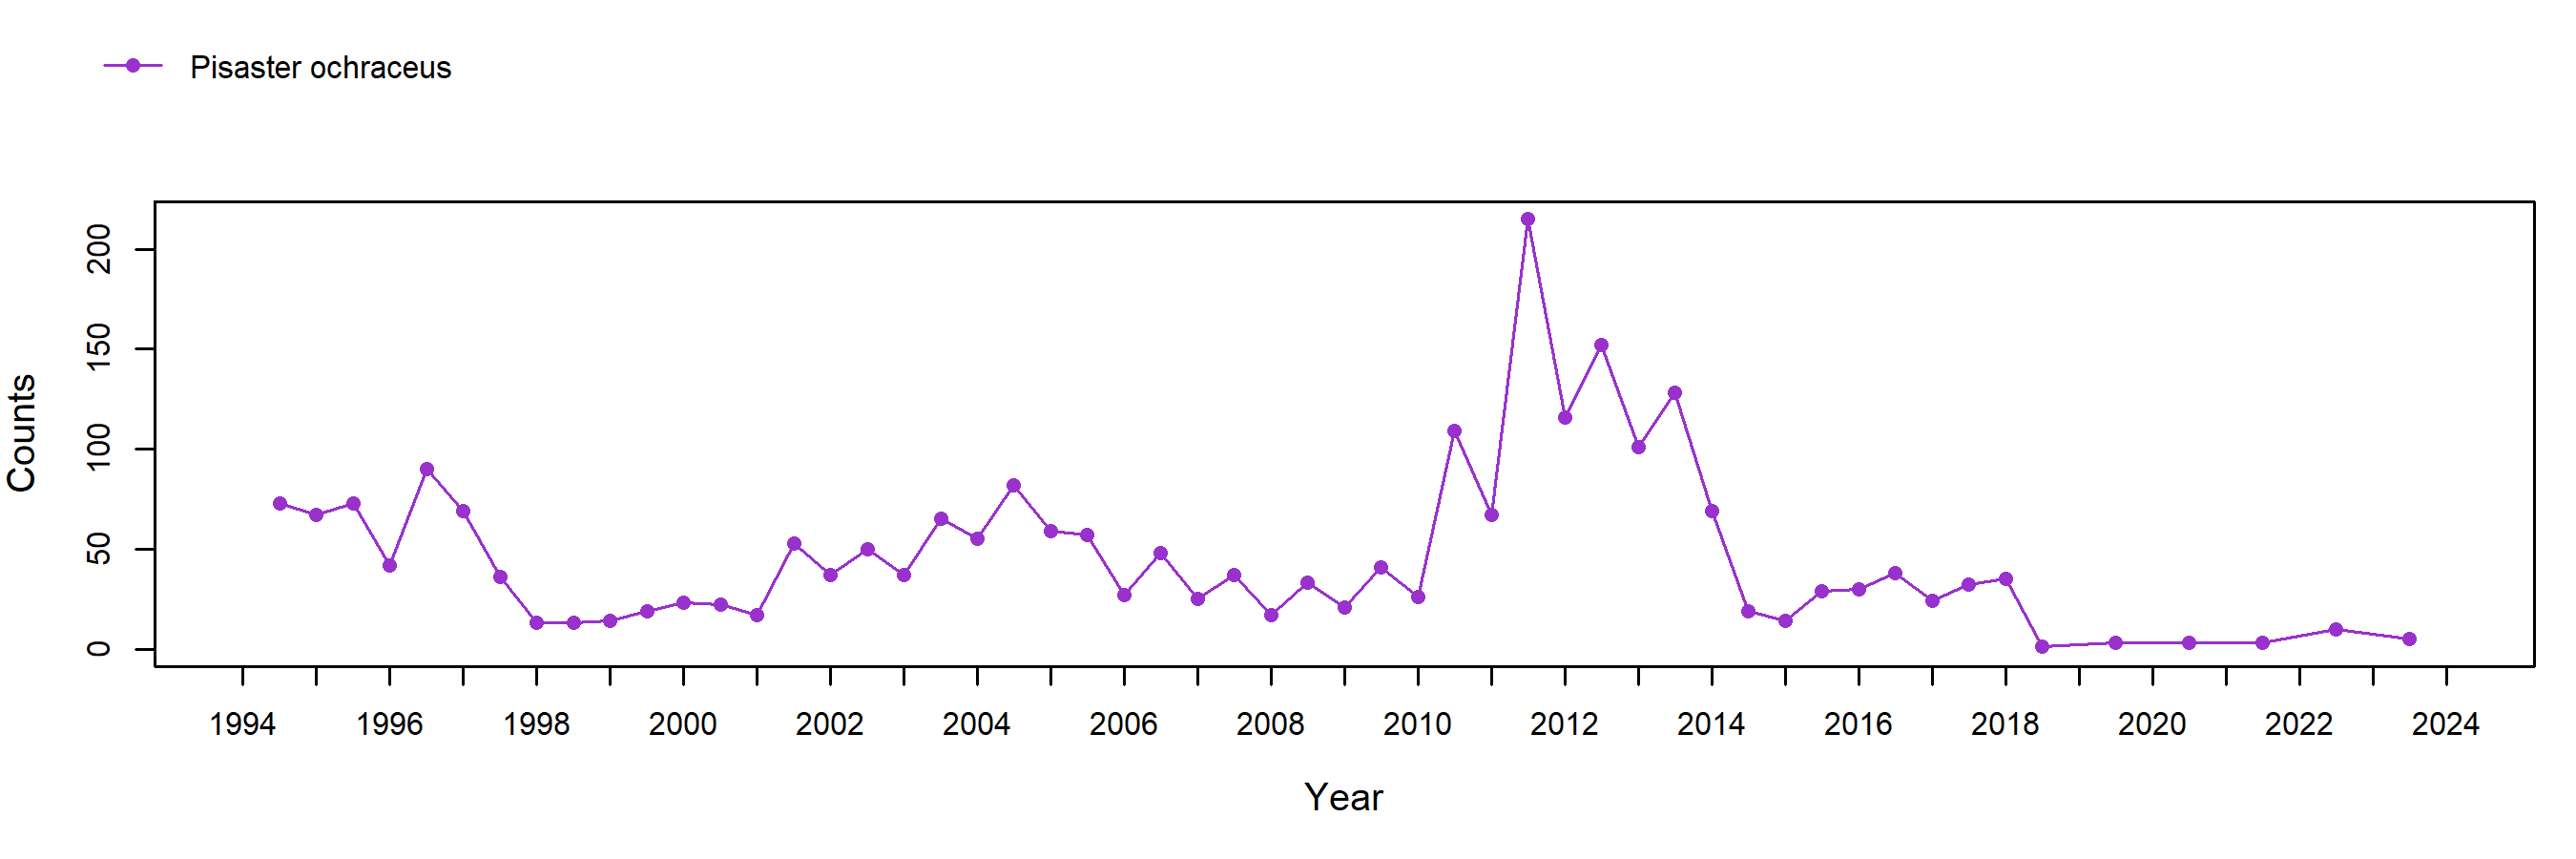 Mussel Shoals Pisaster trend plot